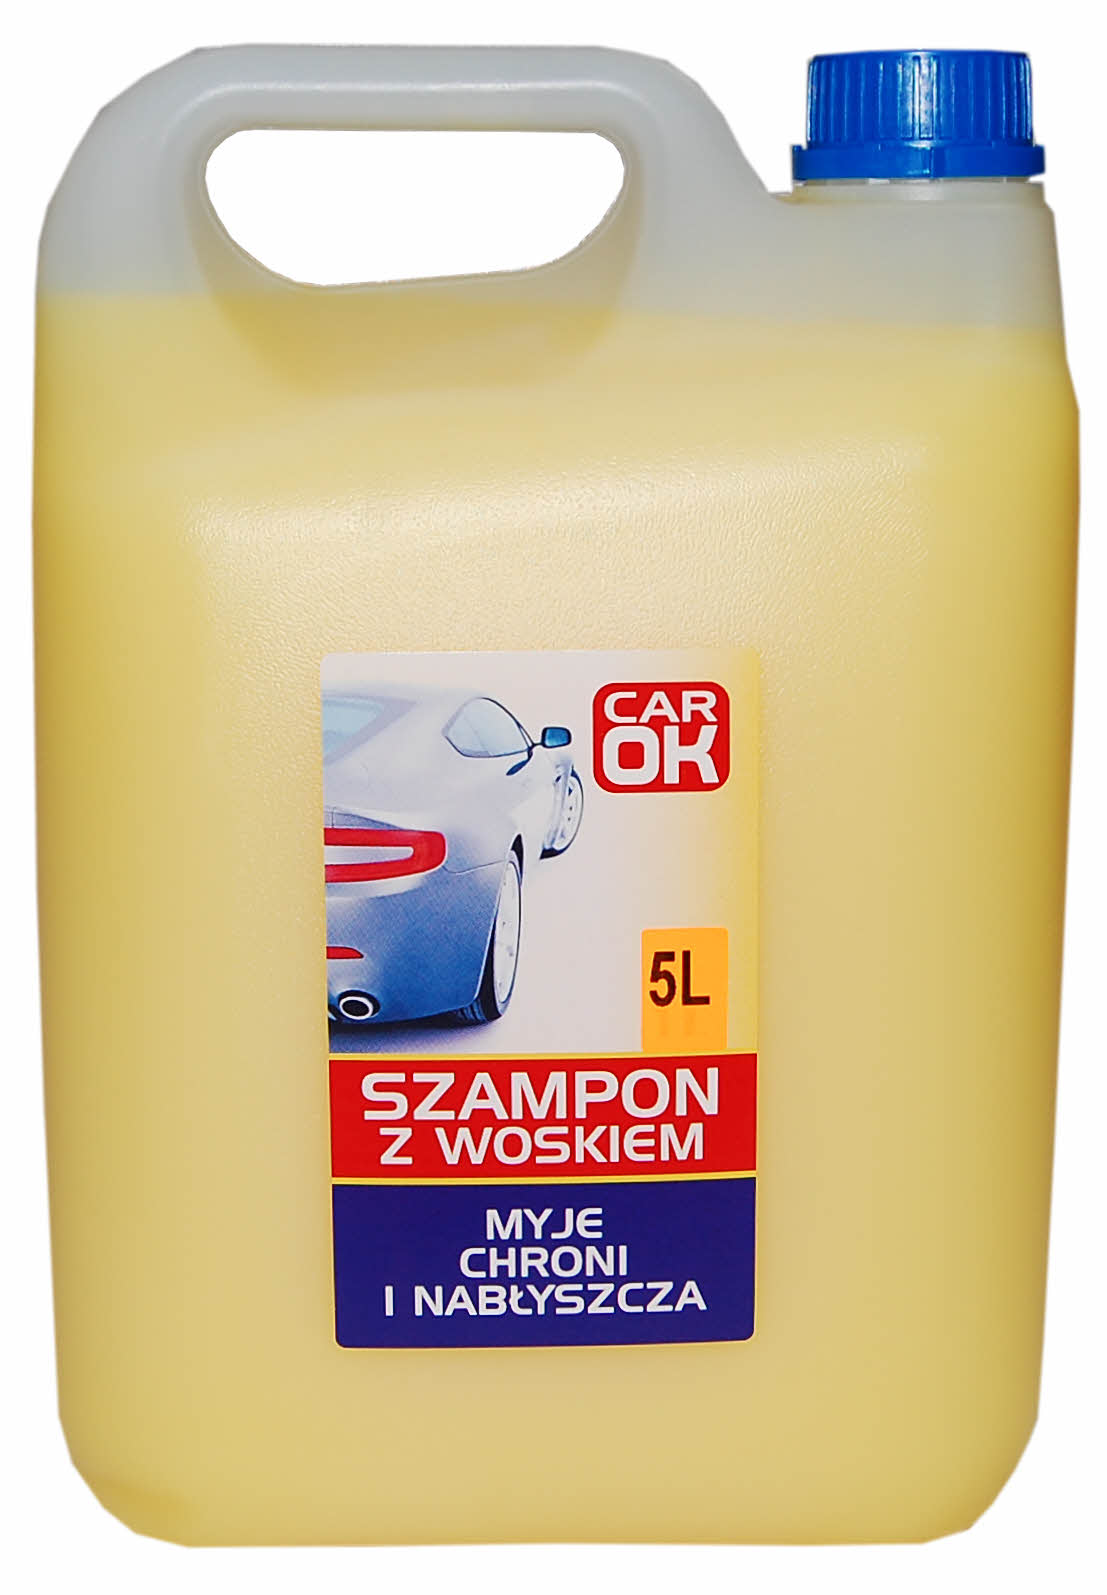 carok szampon 5l gdzie kupić mrówka